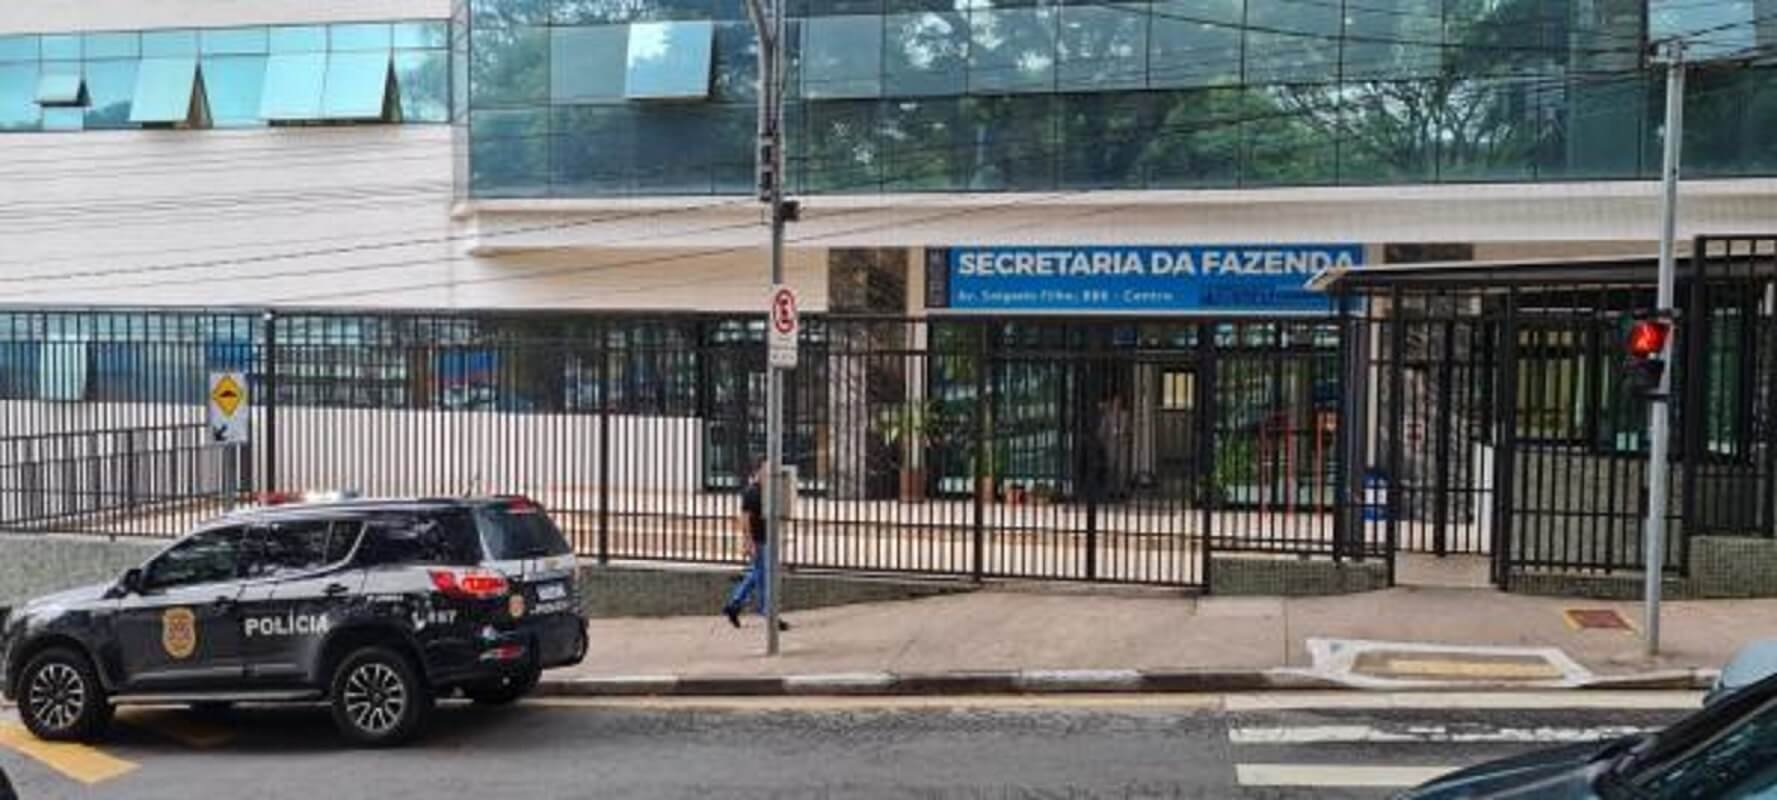 Avenida de Guarulhos é usada para a disputa de rachas - 17/02/2021